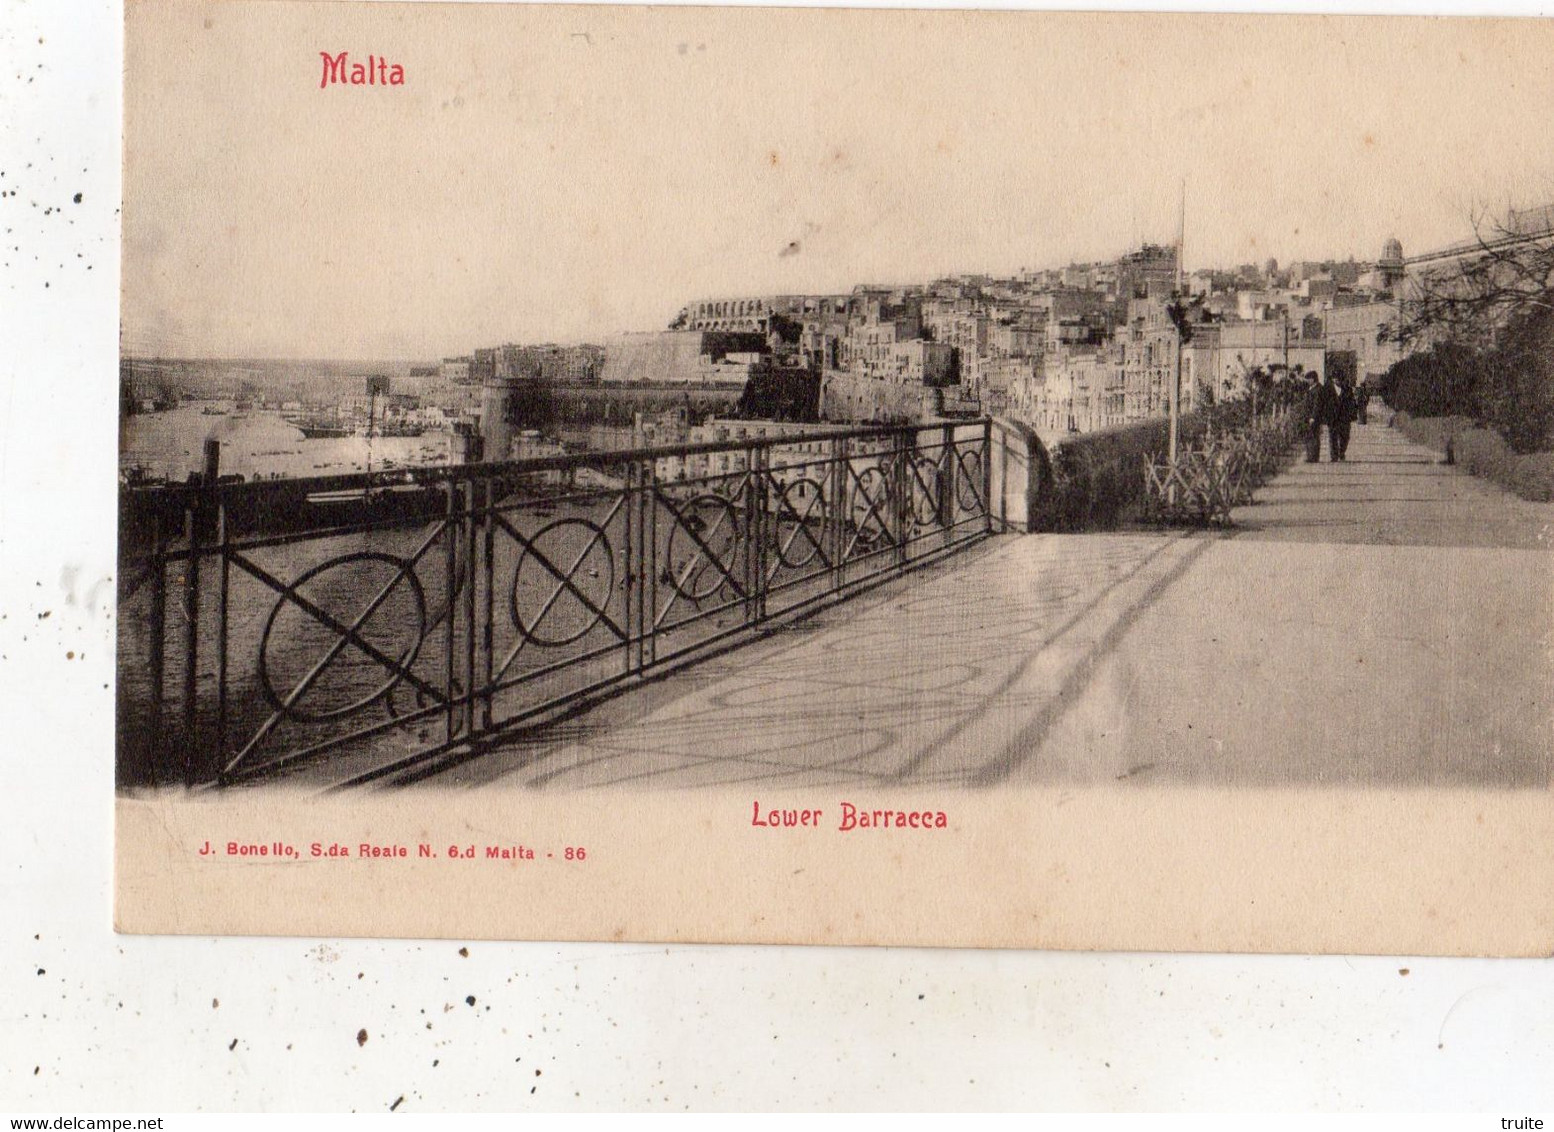 MALTA LOWER BARRACCA (CARTE PRECURSEUR ) - Malte